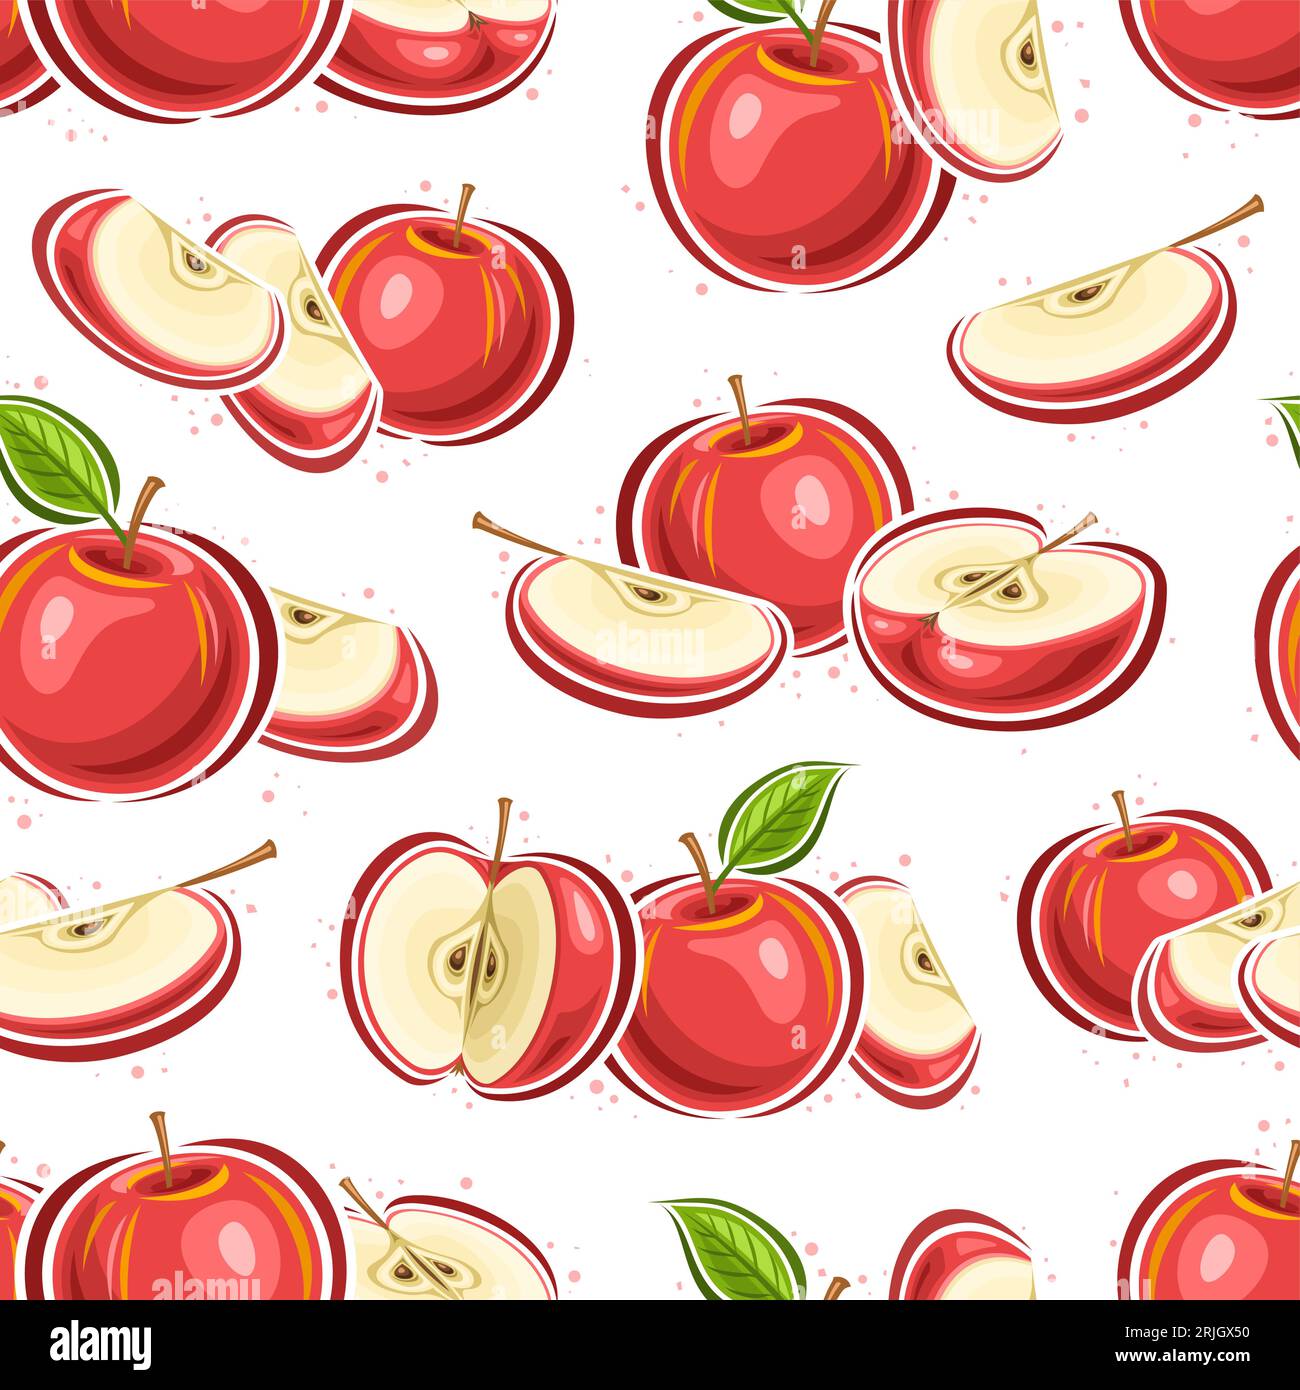 Mele Vector Red motivo senza cuciture, sfondo ripetuto con composizioni fruttate di mele rosse con foglie verdi per confezionare la carta, poster quadrato con Illustrazione Vettoriale